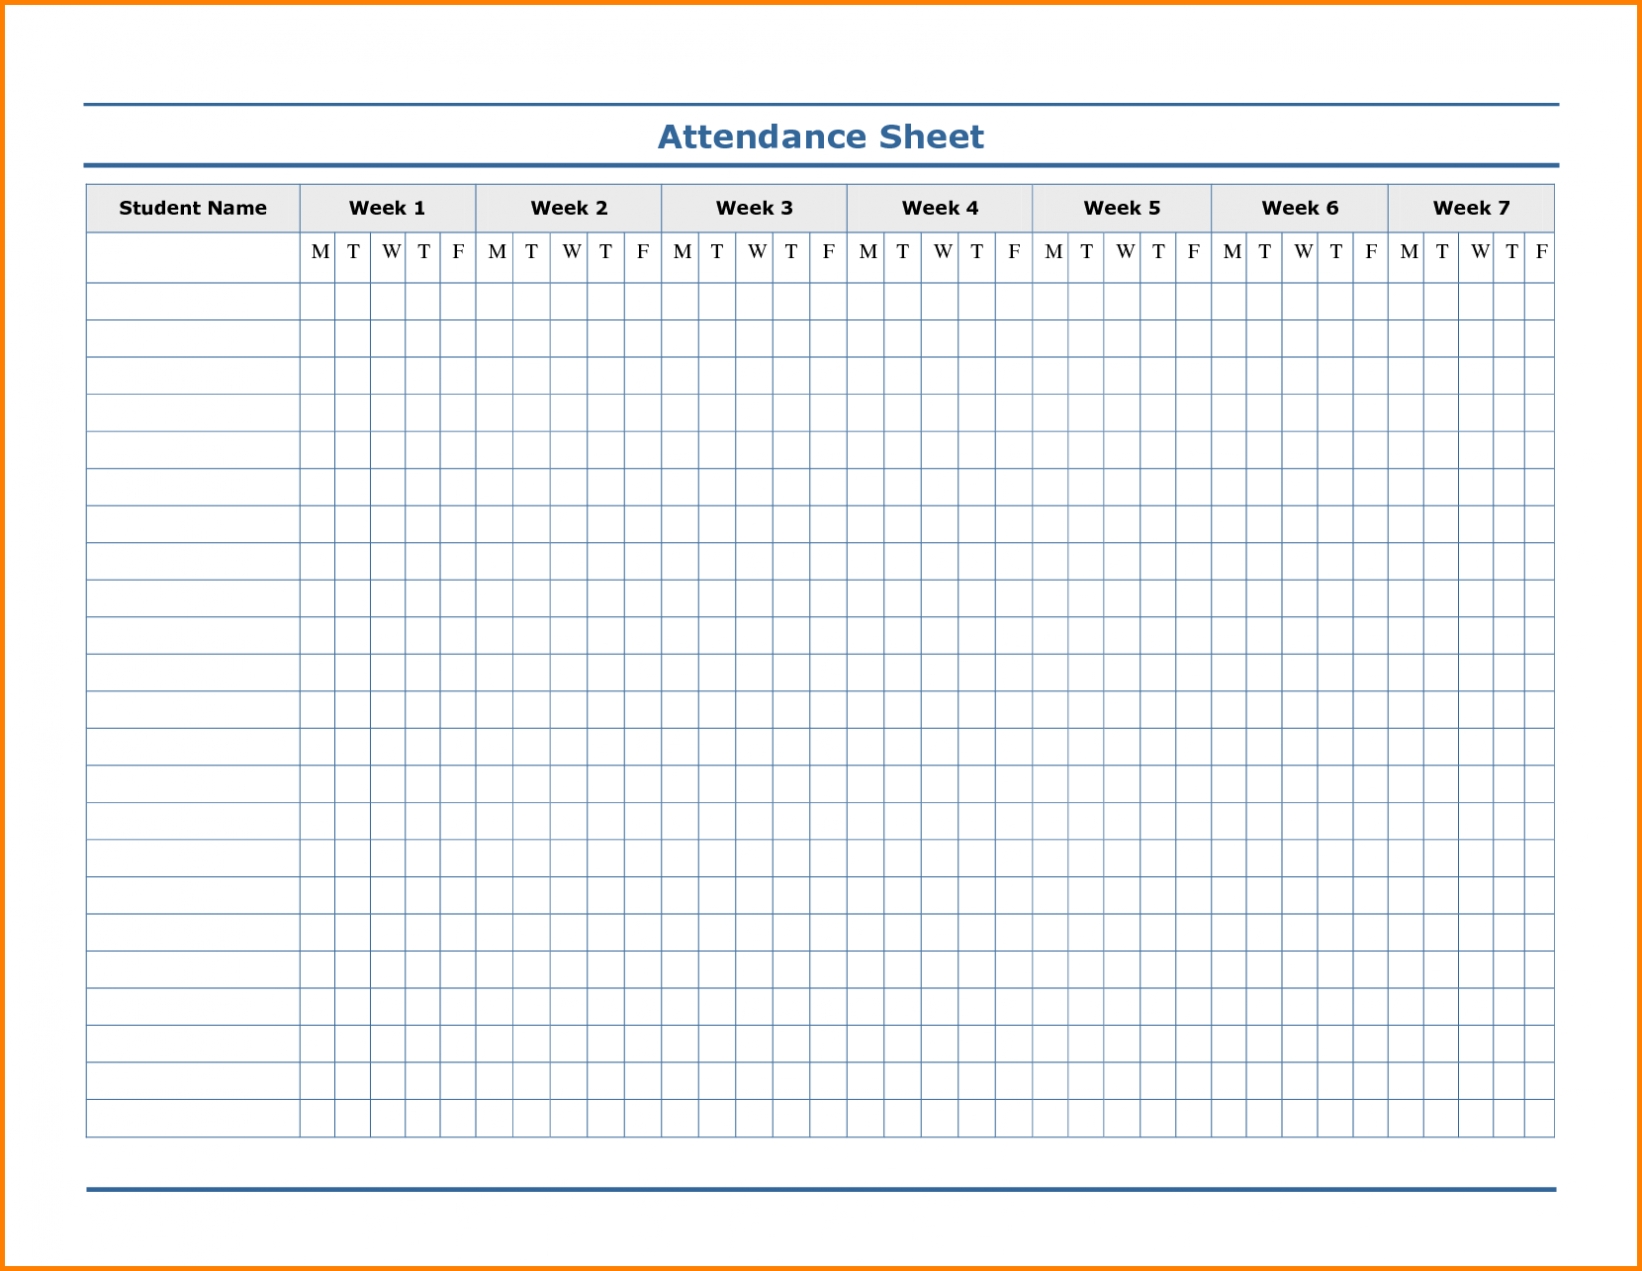 2020 Employee Attendance Calendar Templates | Calendar ...